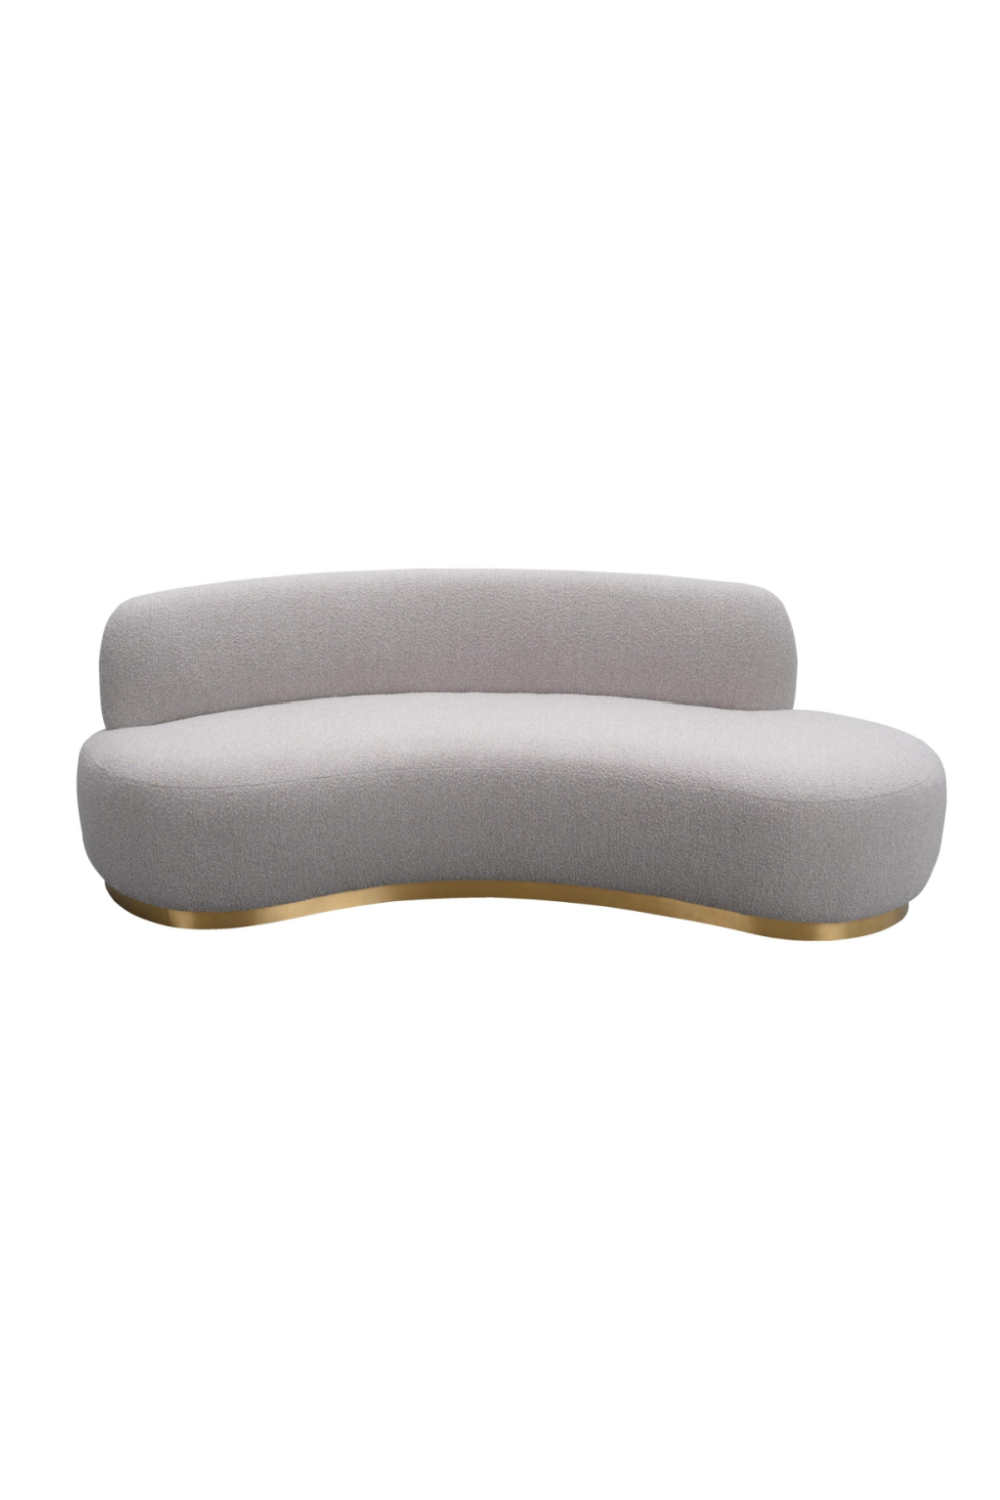 Curved Contemporary Sofa | Liang & Eimil Sasha | OROA.com